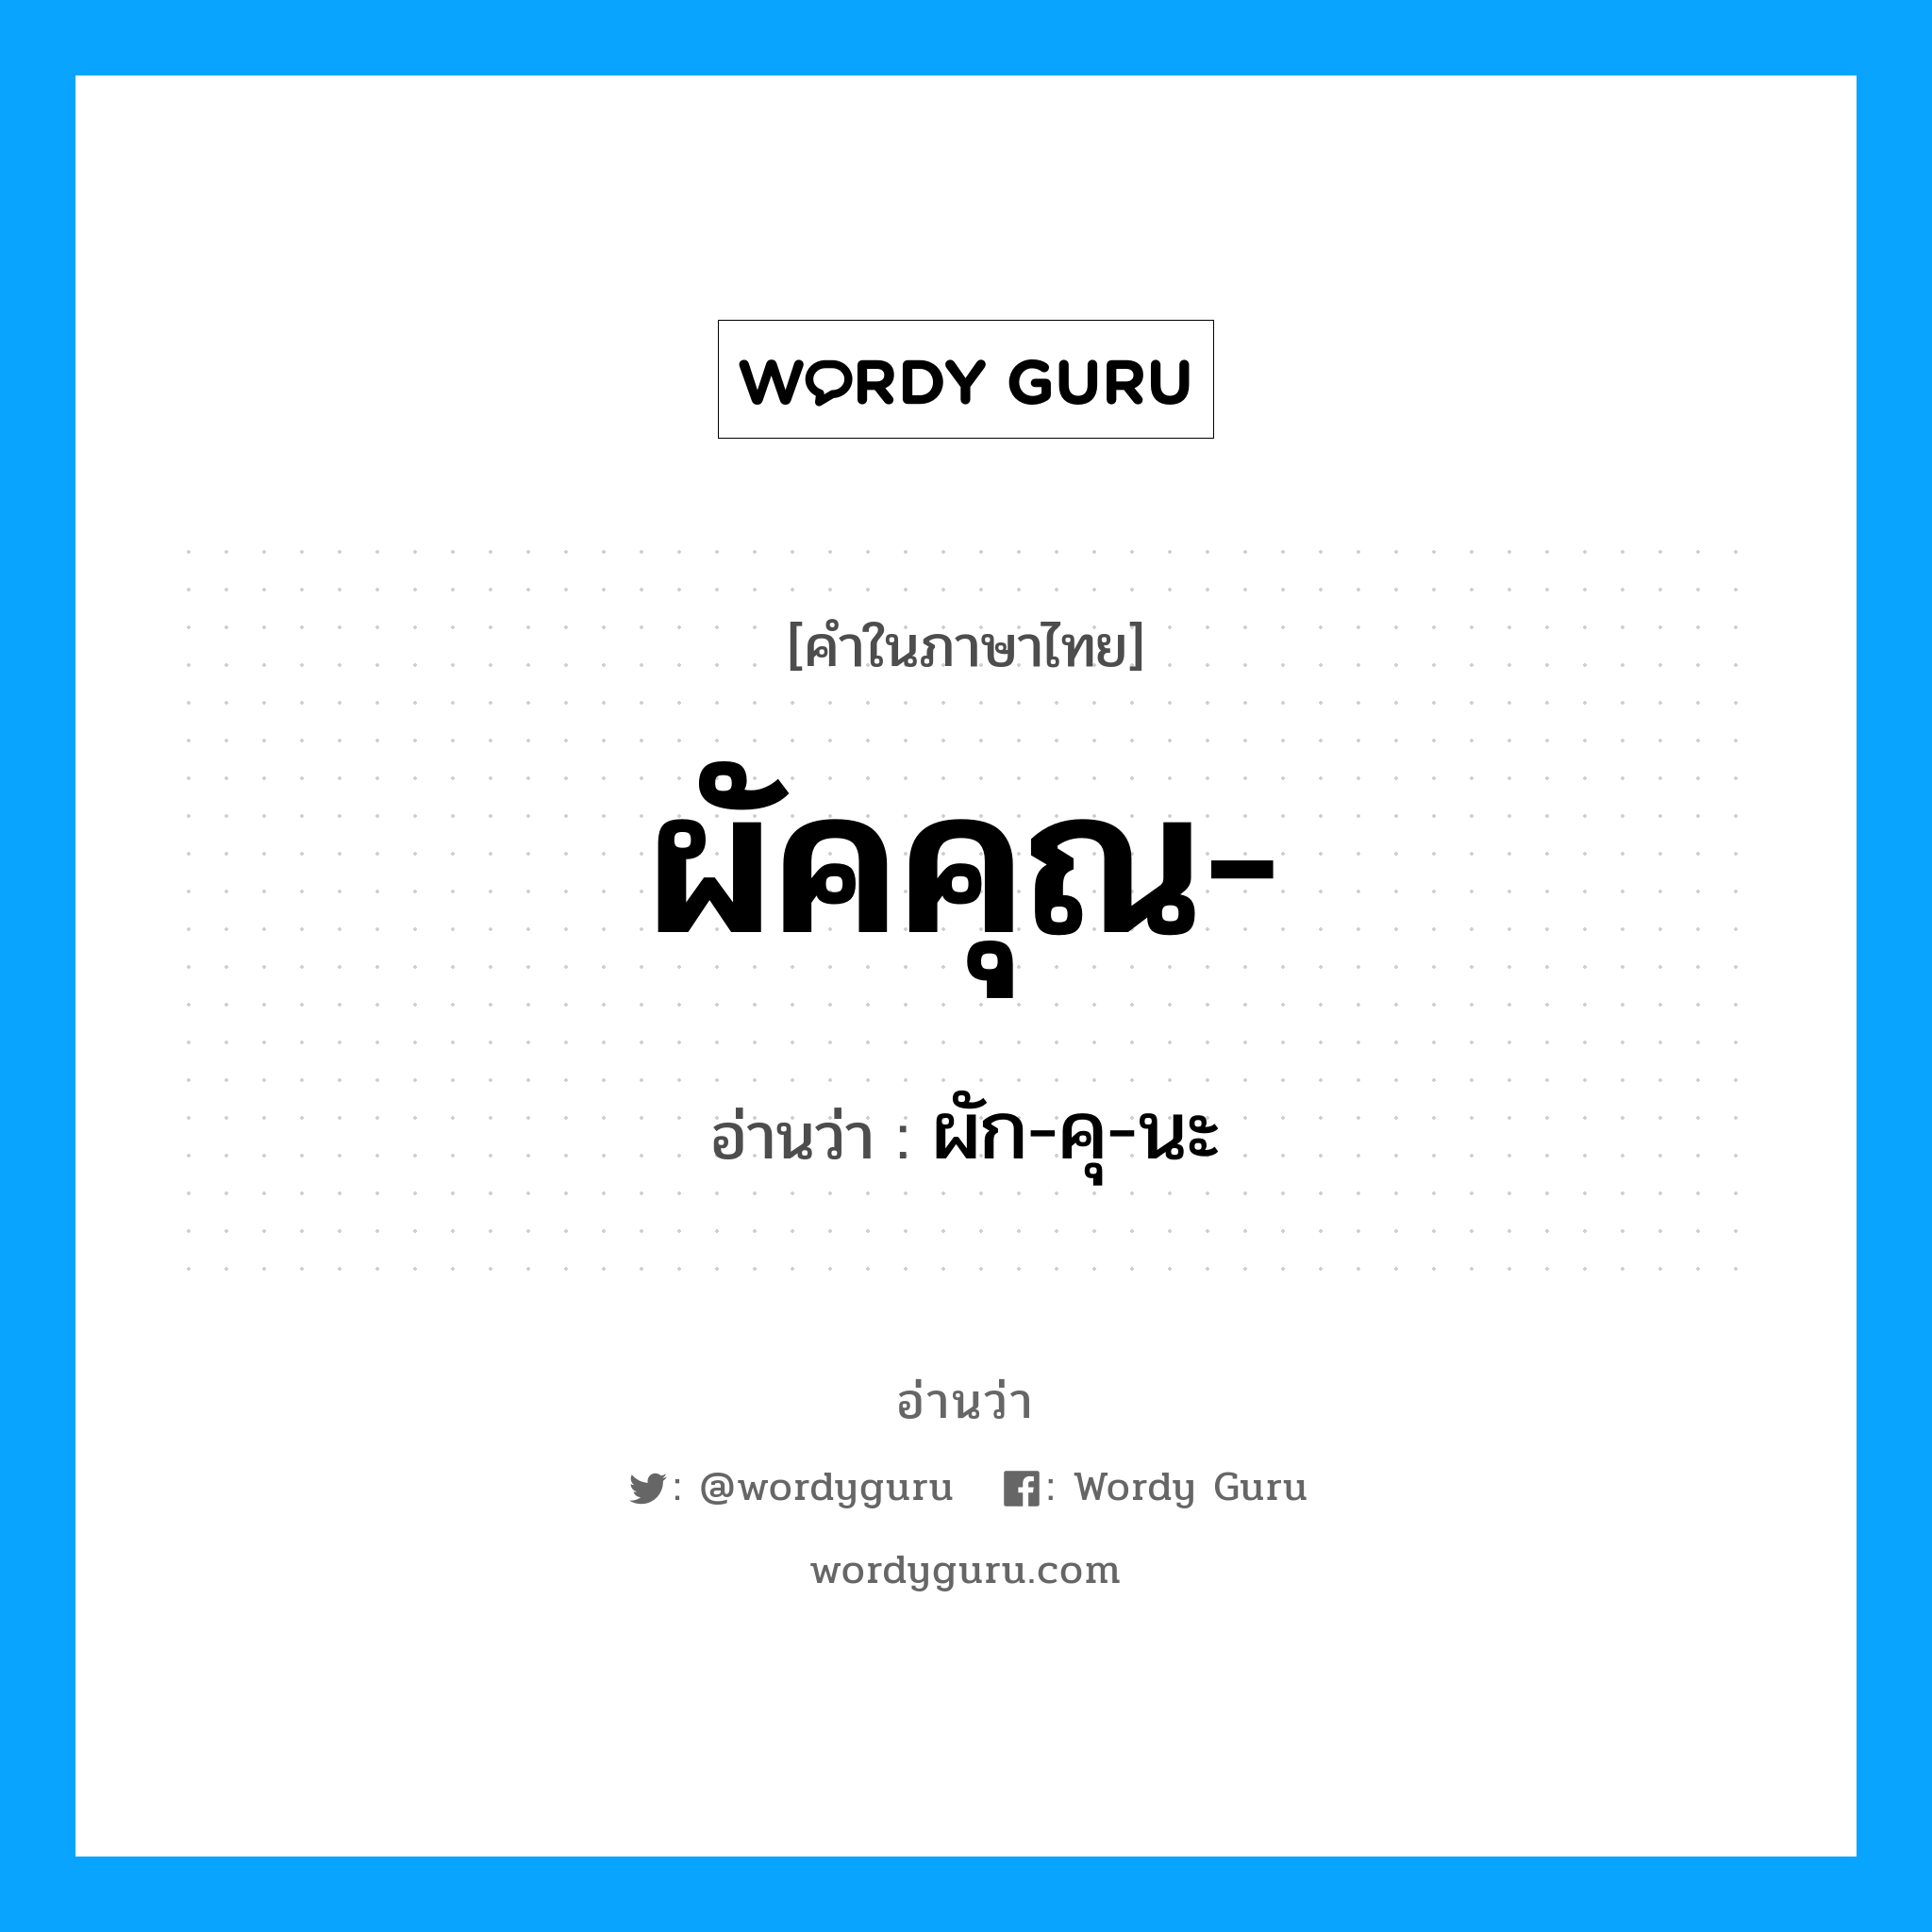 ผัคคุณ อ่านว่า?, คำในภาษาไทย ผัคคุณ- อ่านว่า ผัก-คุ-นะ